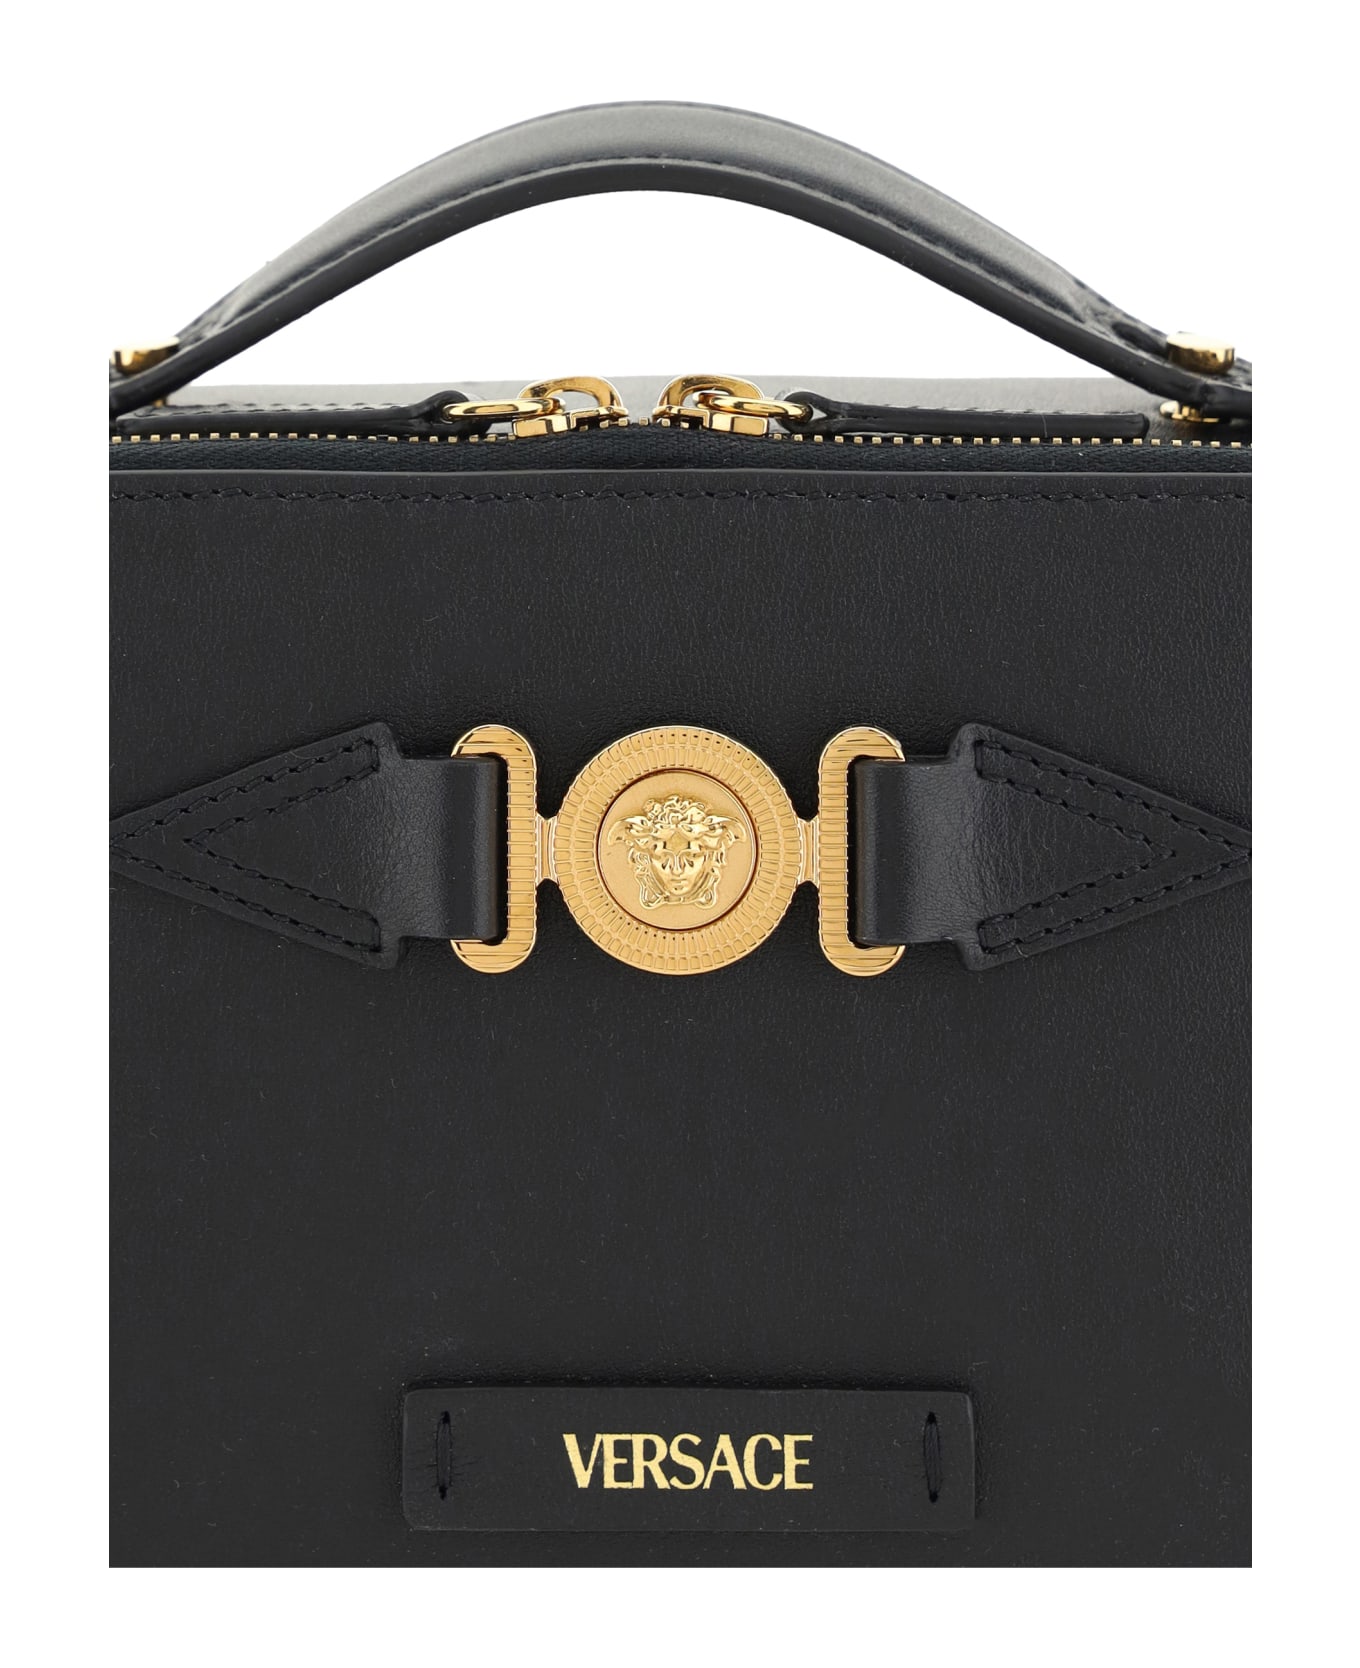 Versace Medusa Shoulder Bag - Black/versace Gold